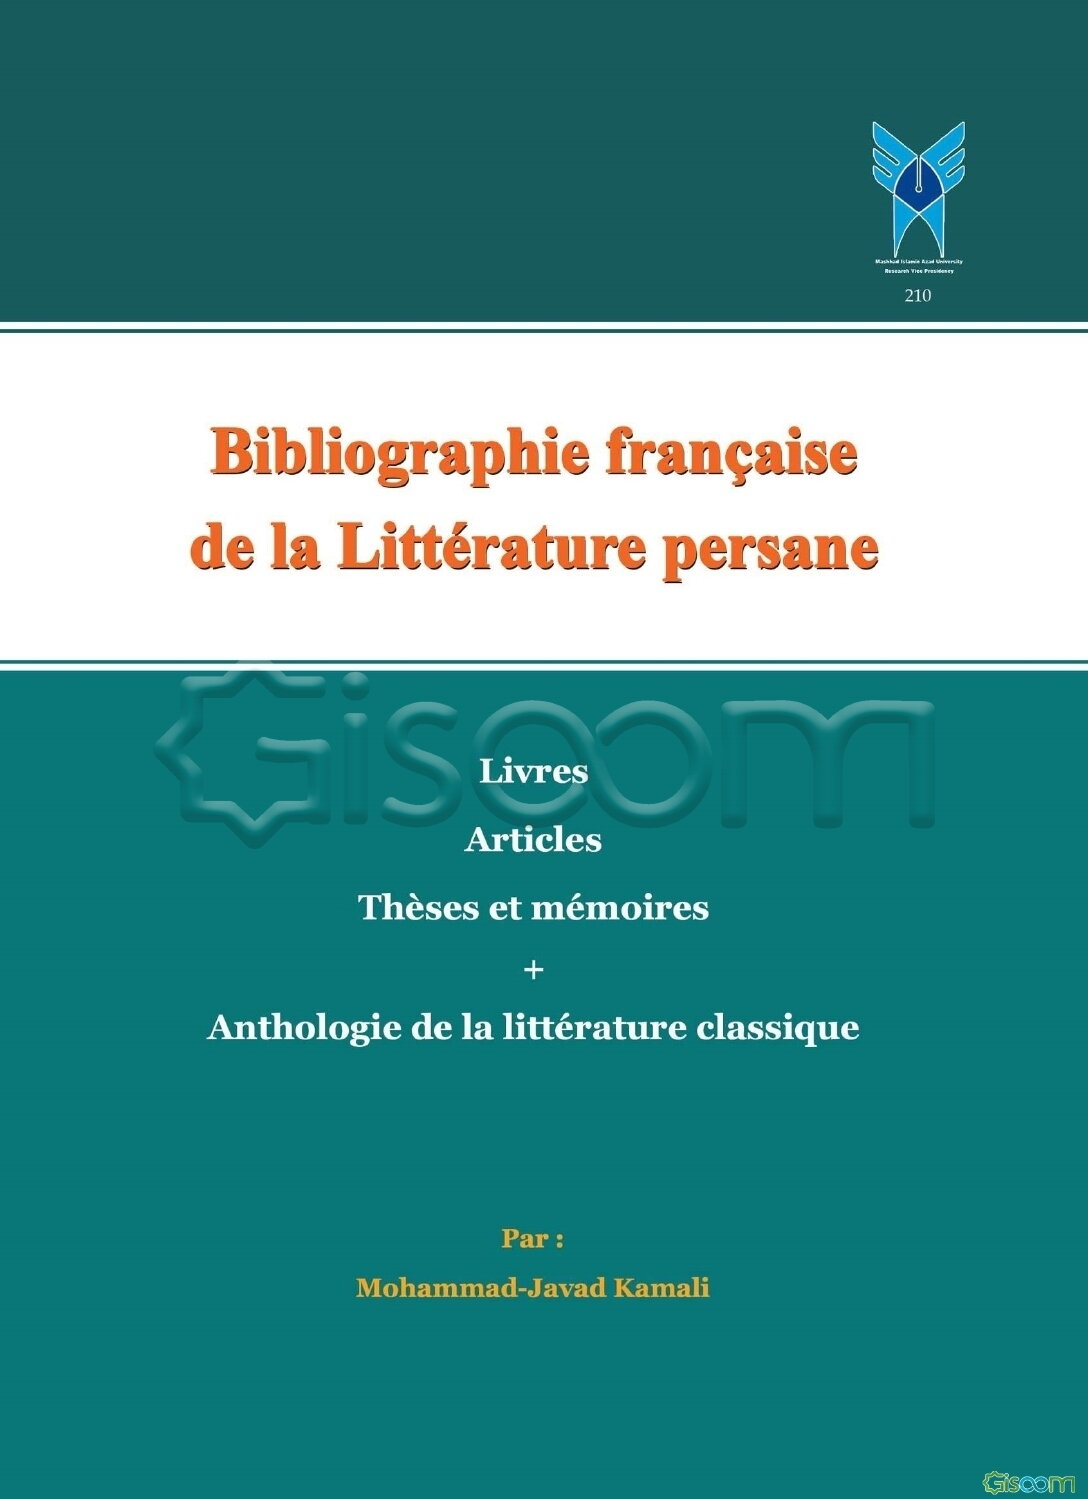 La bibliographie Francaise de la litterature Persane